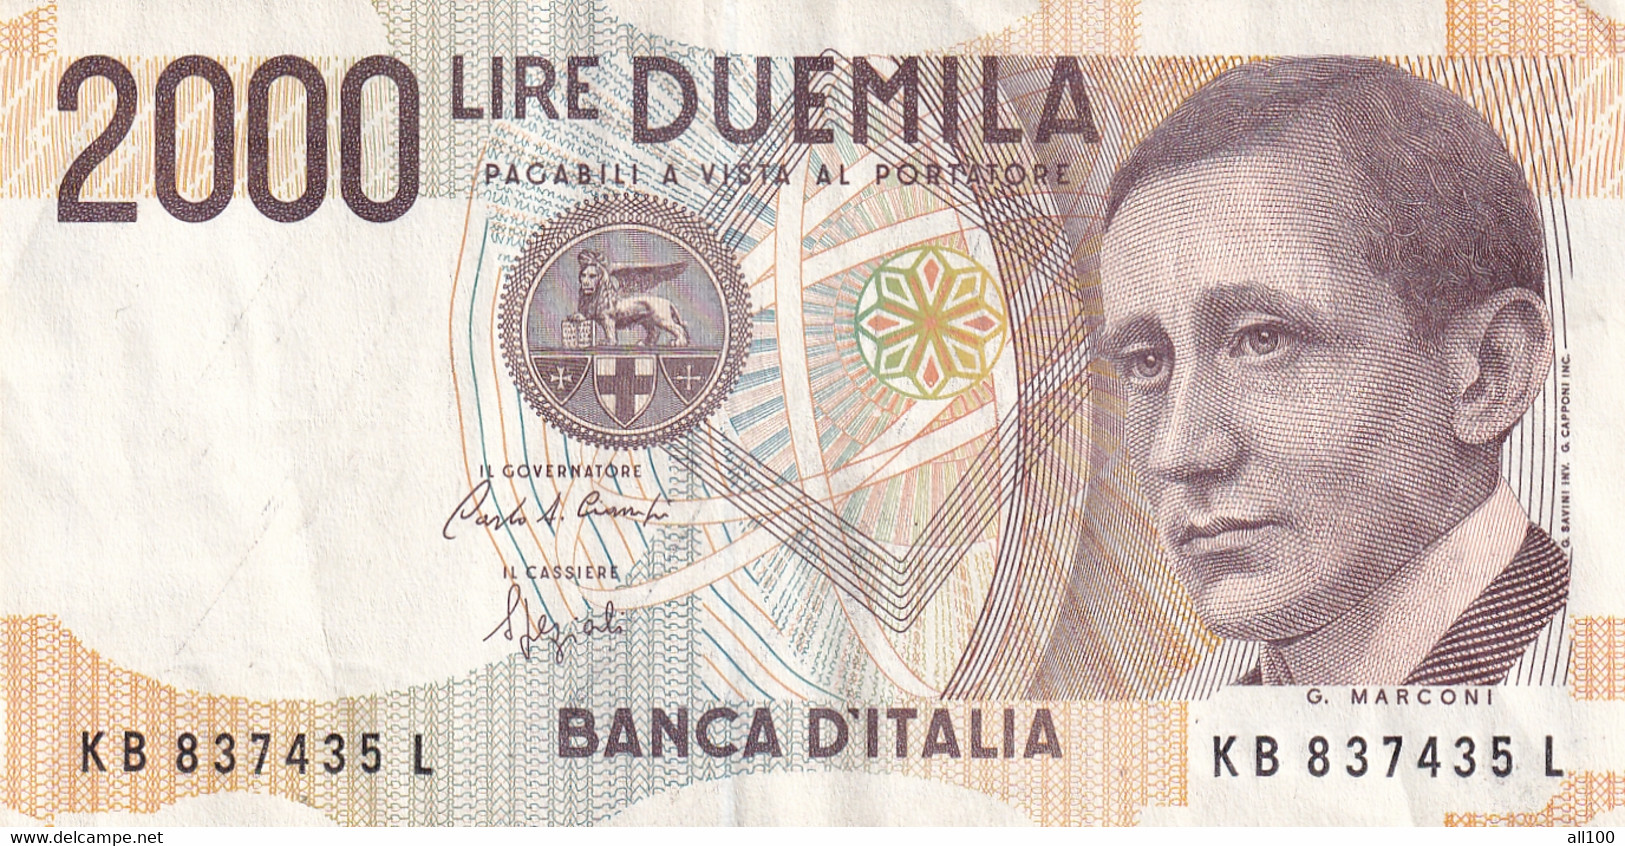 DUEMILA LIRE BANCA D'ITALIA DIRECTO MINISTERIALE 3 OTTOBRE 1990 2000 LIRE BANKNOTE GOOD CONDITION - 2000 Liras